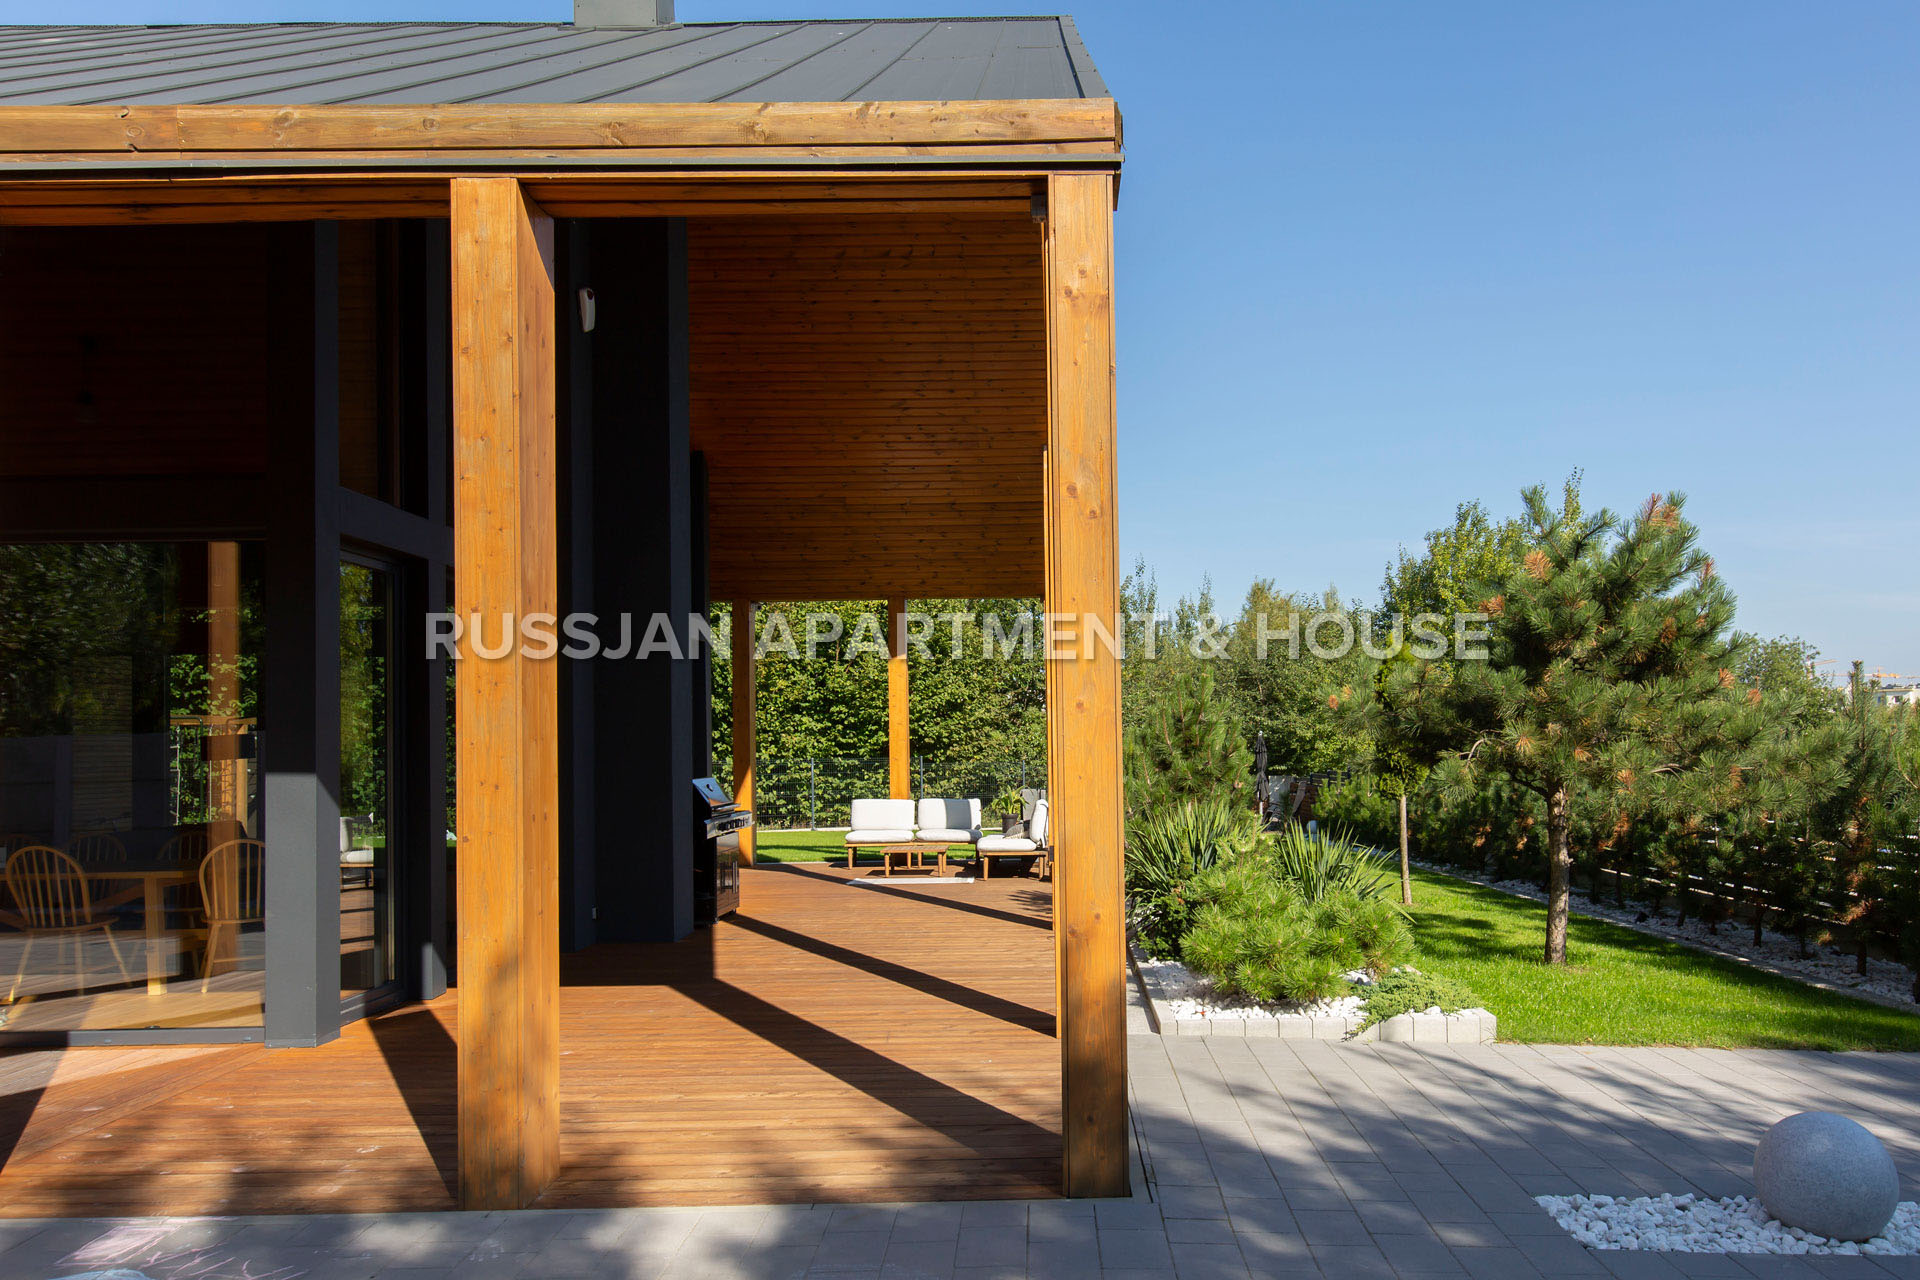 DOM GDAŃSK - Niebanalny dom w stylu nowoczesnej stodoły - Russjan